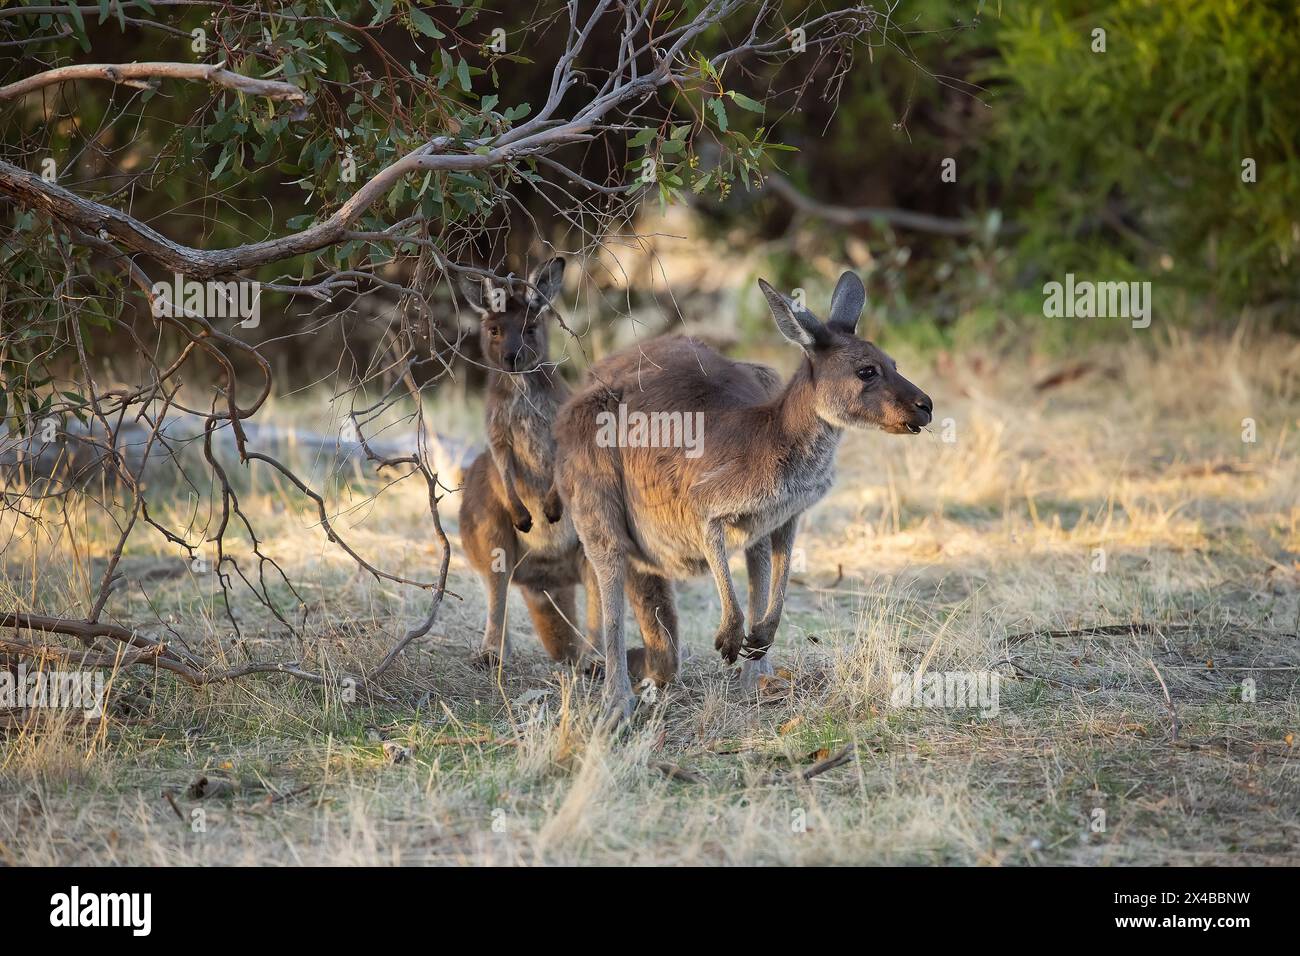 Un mignon kangourou sauvage pèle sous les arbres au coucher du soleil Banque D'Images